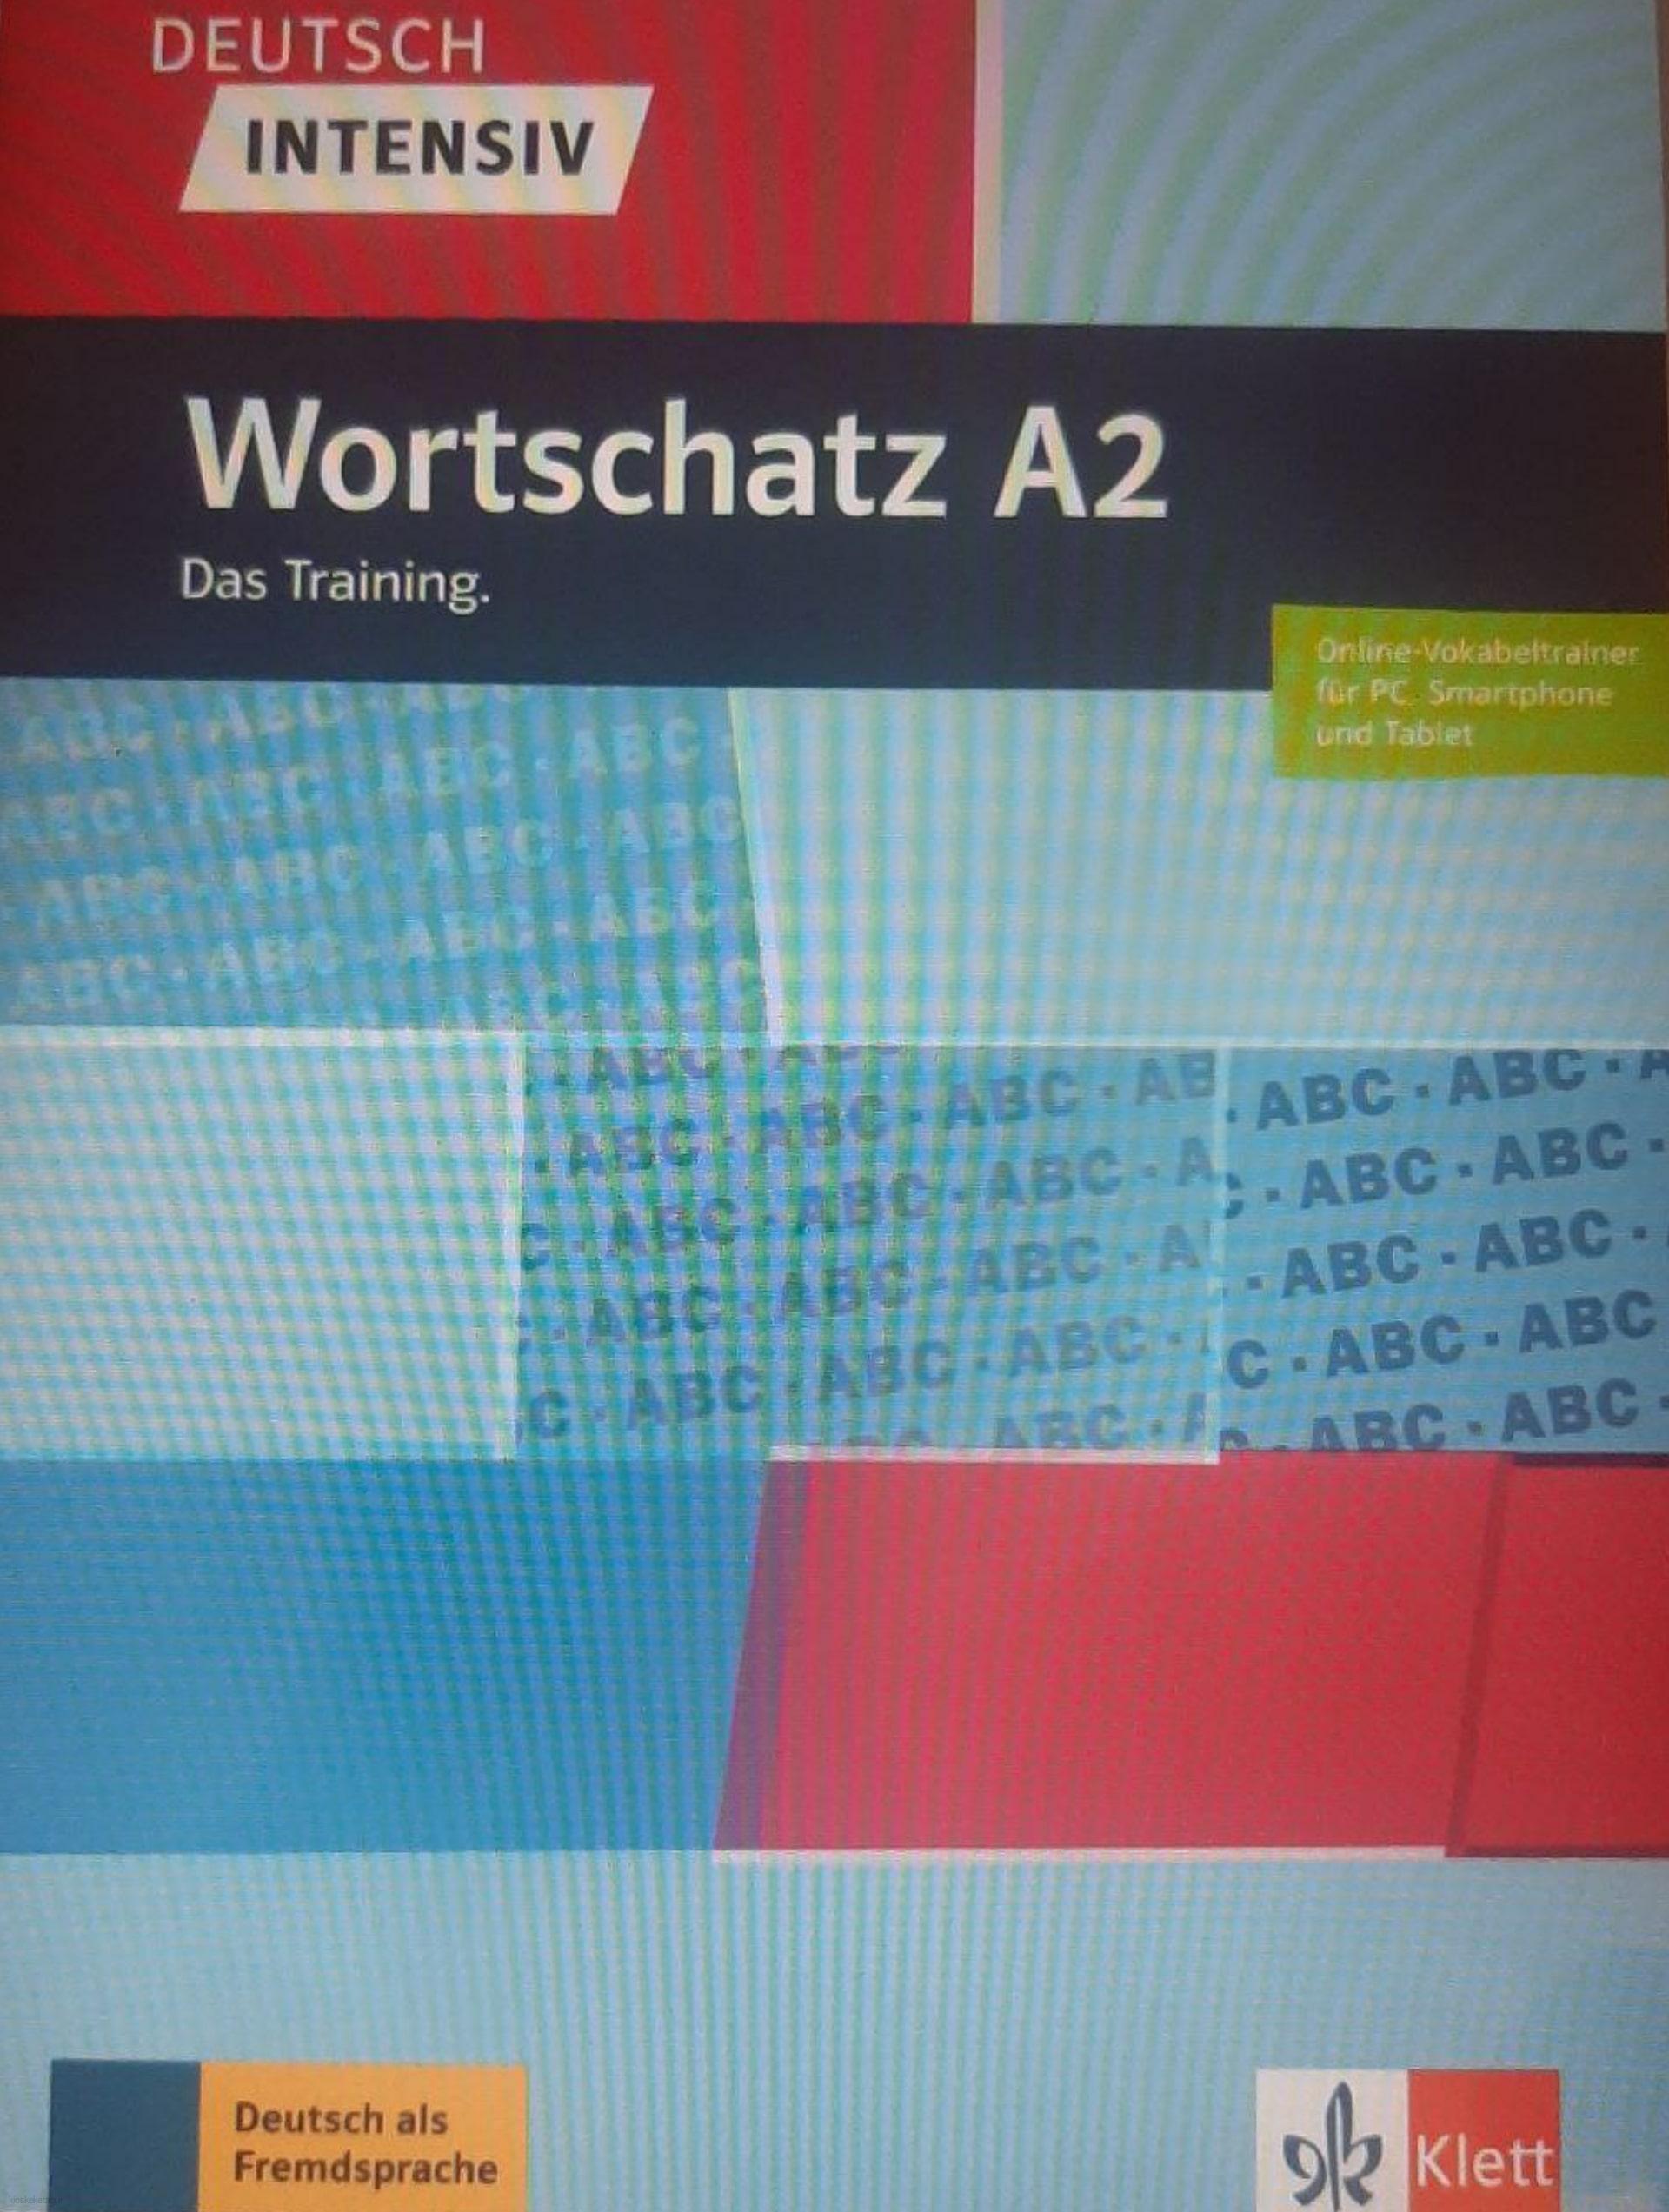 دانلود کتاب آلمانیwortschatz a2